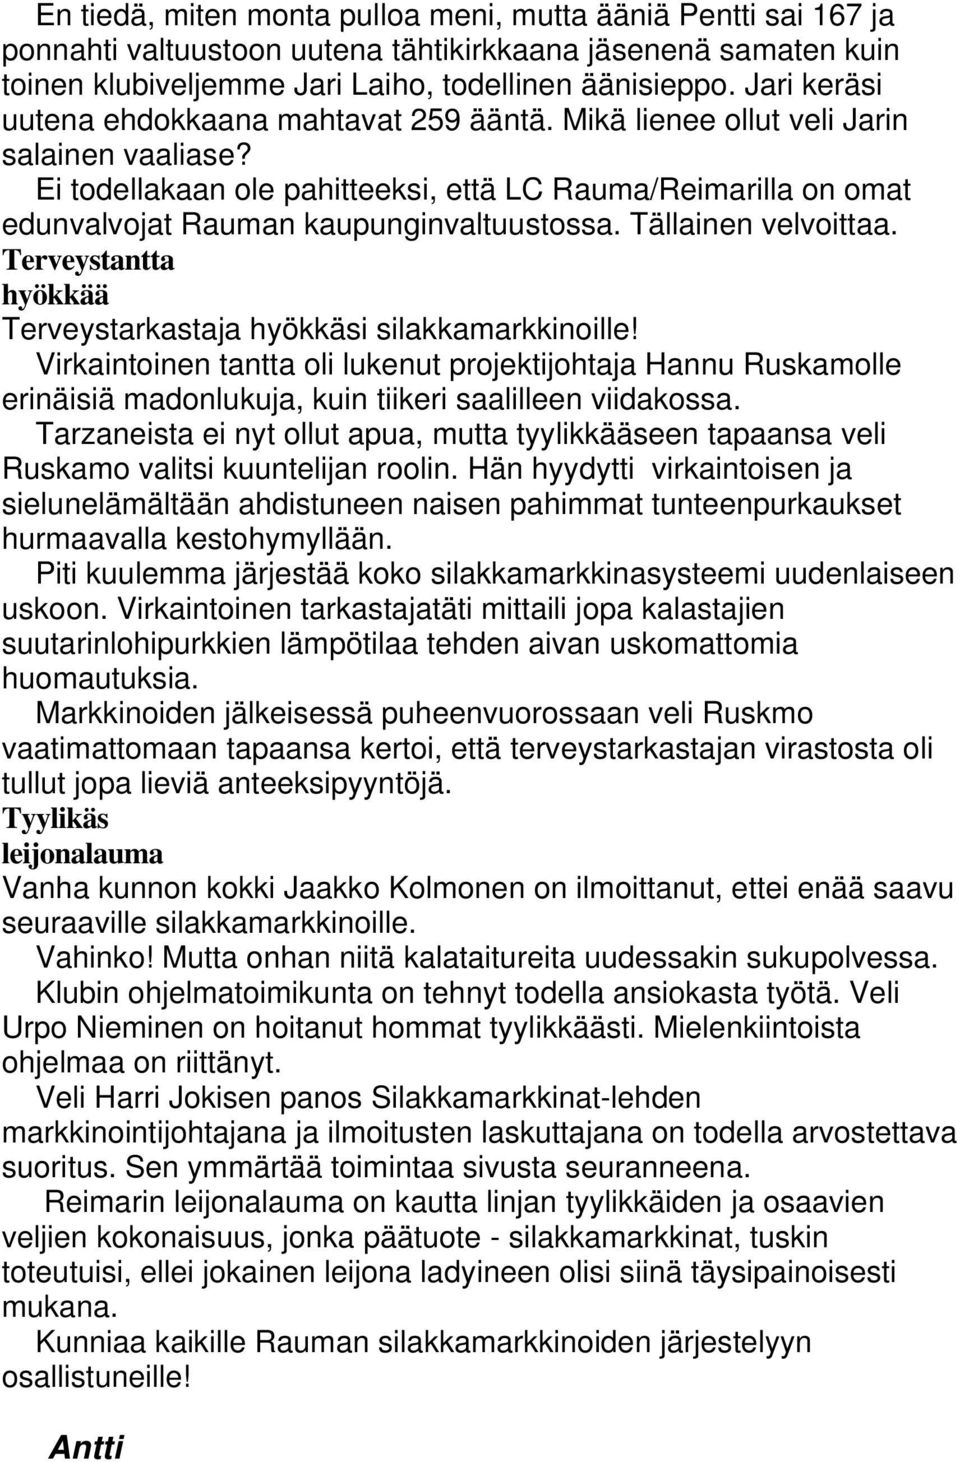 Ei todellakaan ole pahitteeksi, että LC Rauma/Reimarilla on omat edunvalvojat Rauman kaupunginvaltuustossa. Tällainen velvoittaa. Terveystantta hyökkää Terveystarkastaja hyökkäsi silakkamarkkinoille!